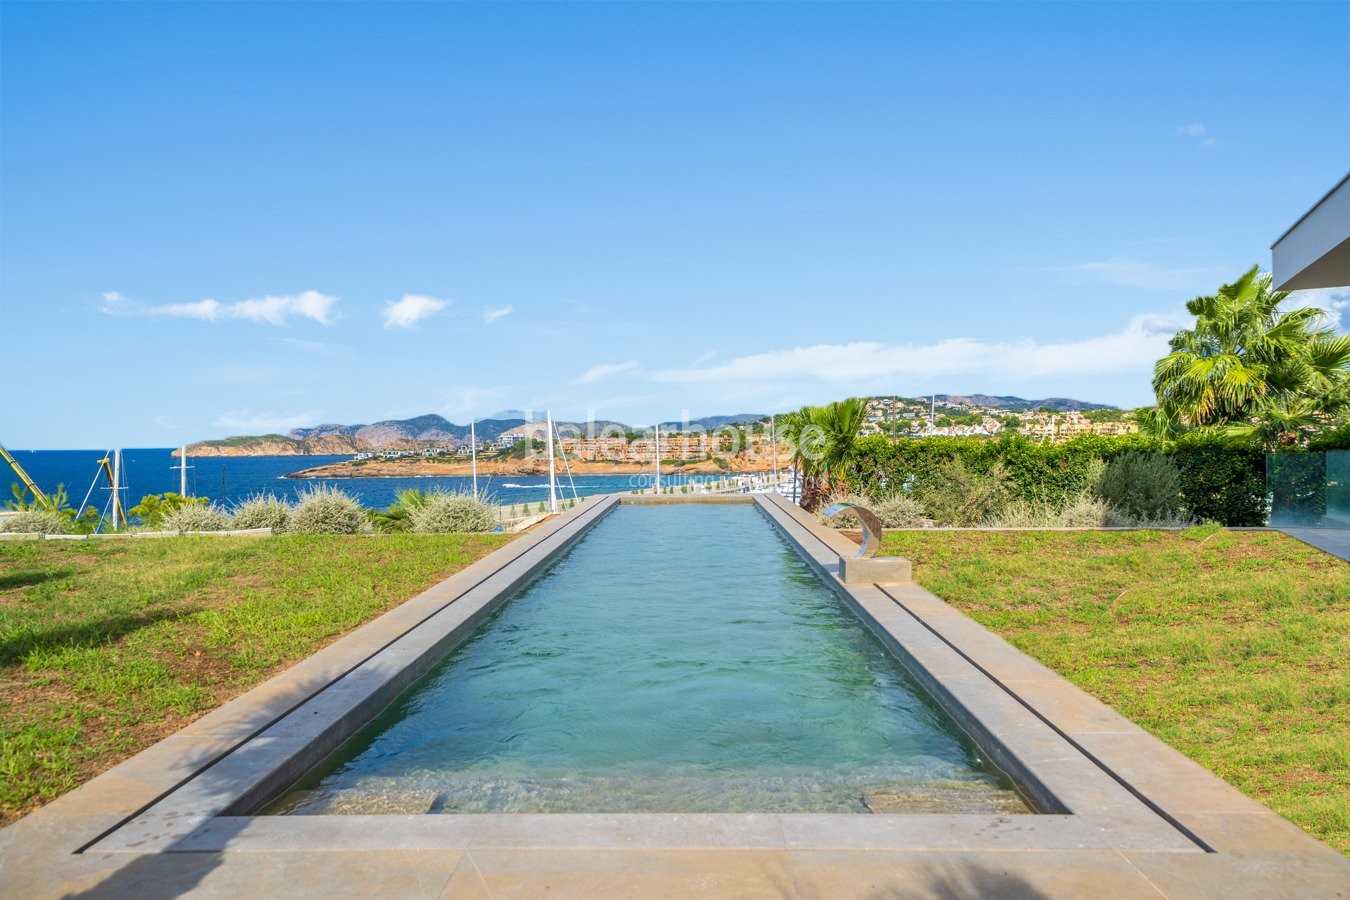 Nueva villa contemporánea en primera línea que domina vistas espectaculares al mar en Port Adriano.